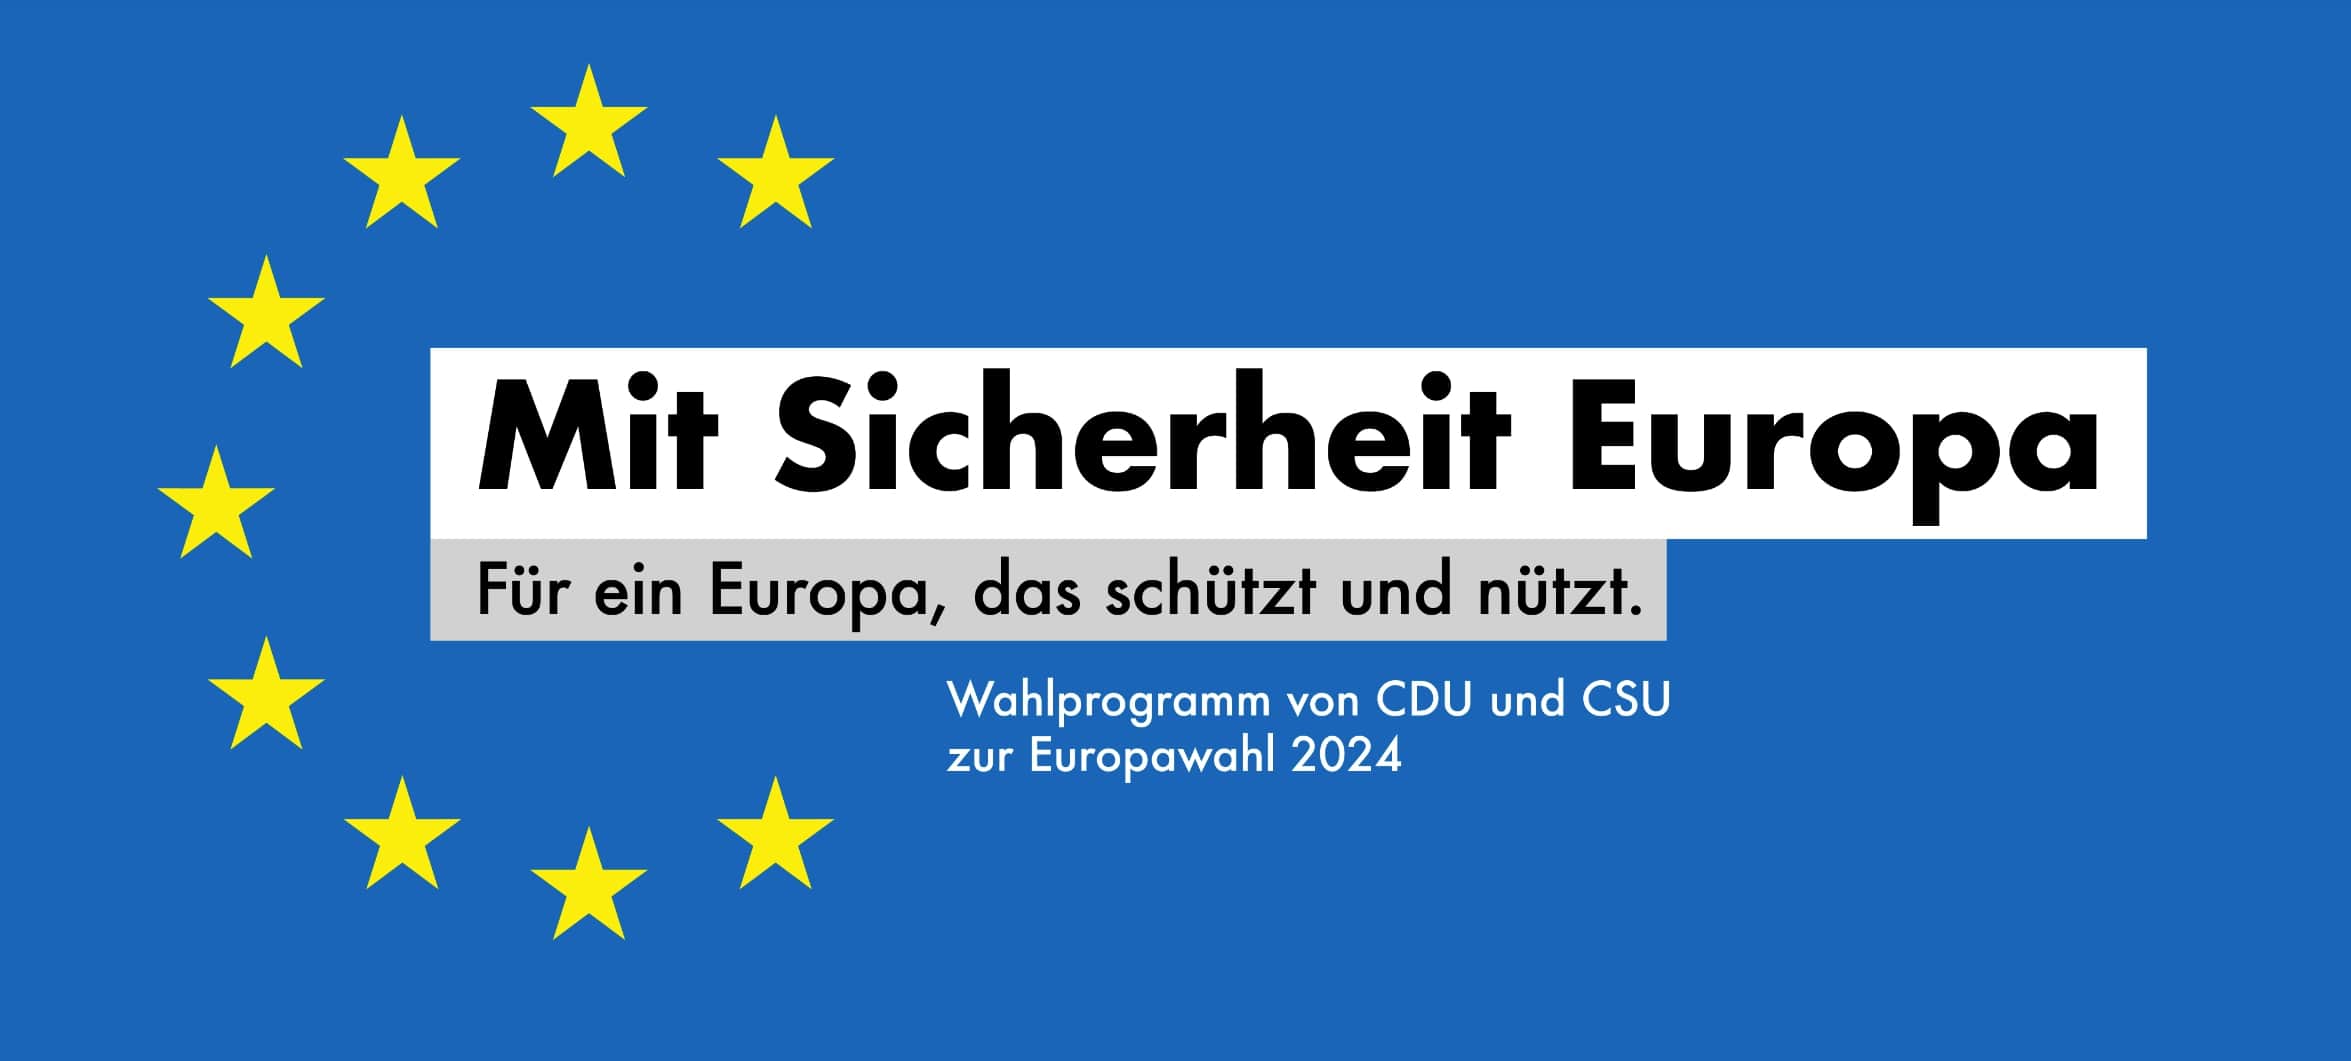 Wahlprogramm von CDU und CSU zur Europawahl 2024